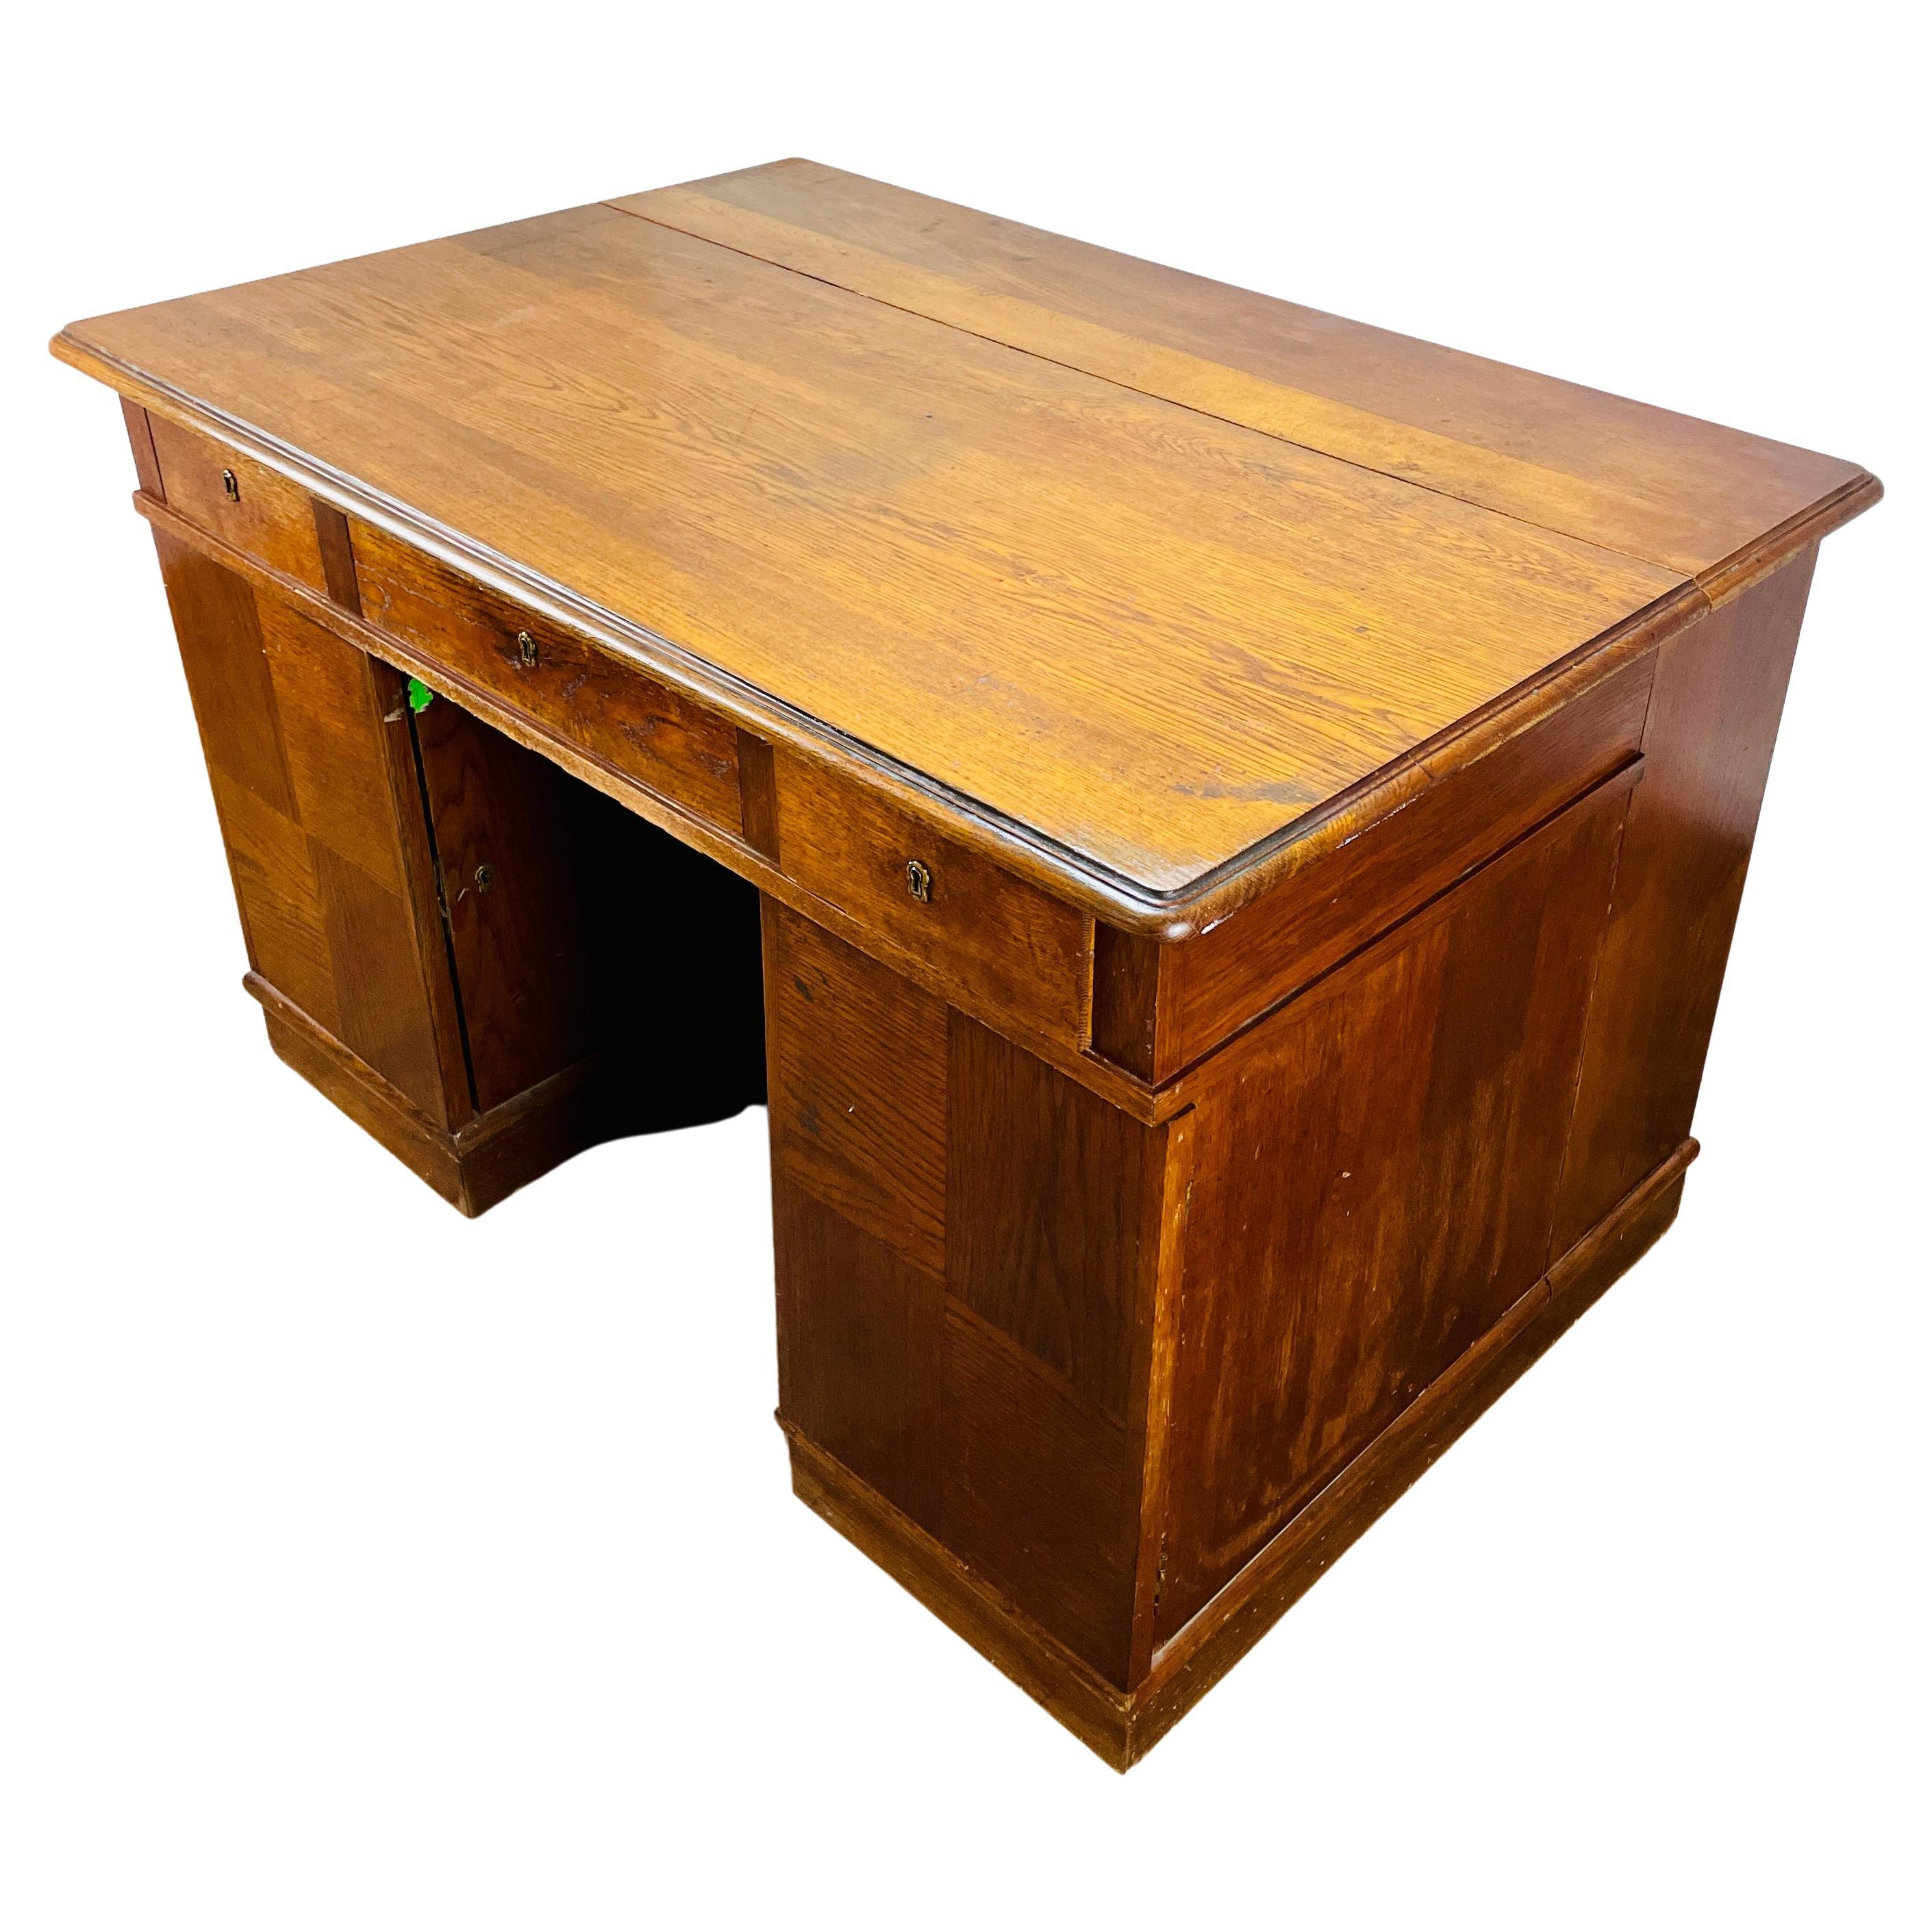 Großer Vintage-Schreibtisch aus Eichenholz, doppelseitig mit Display-End